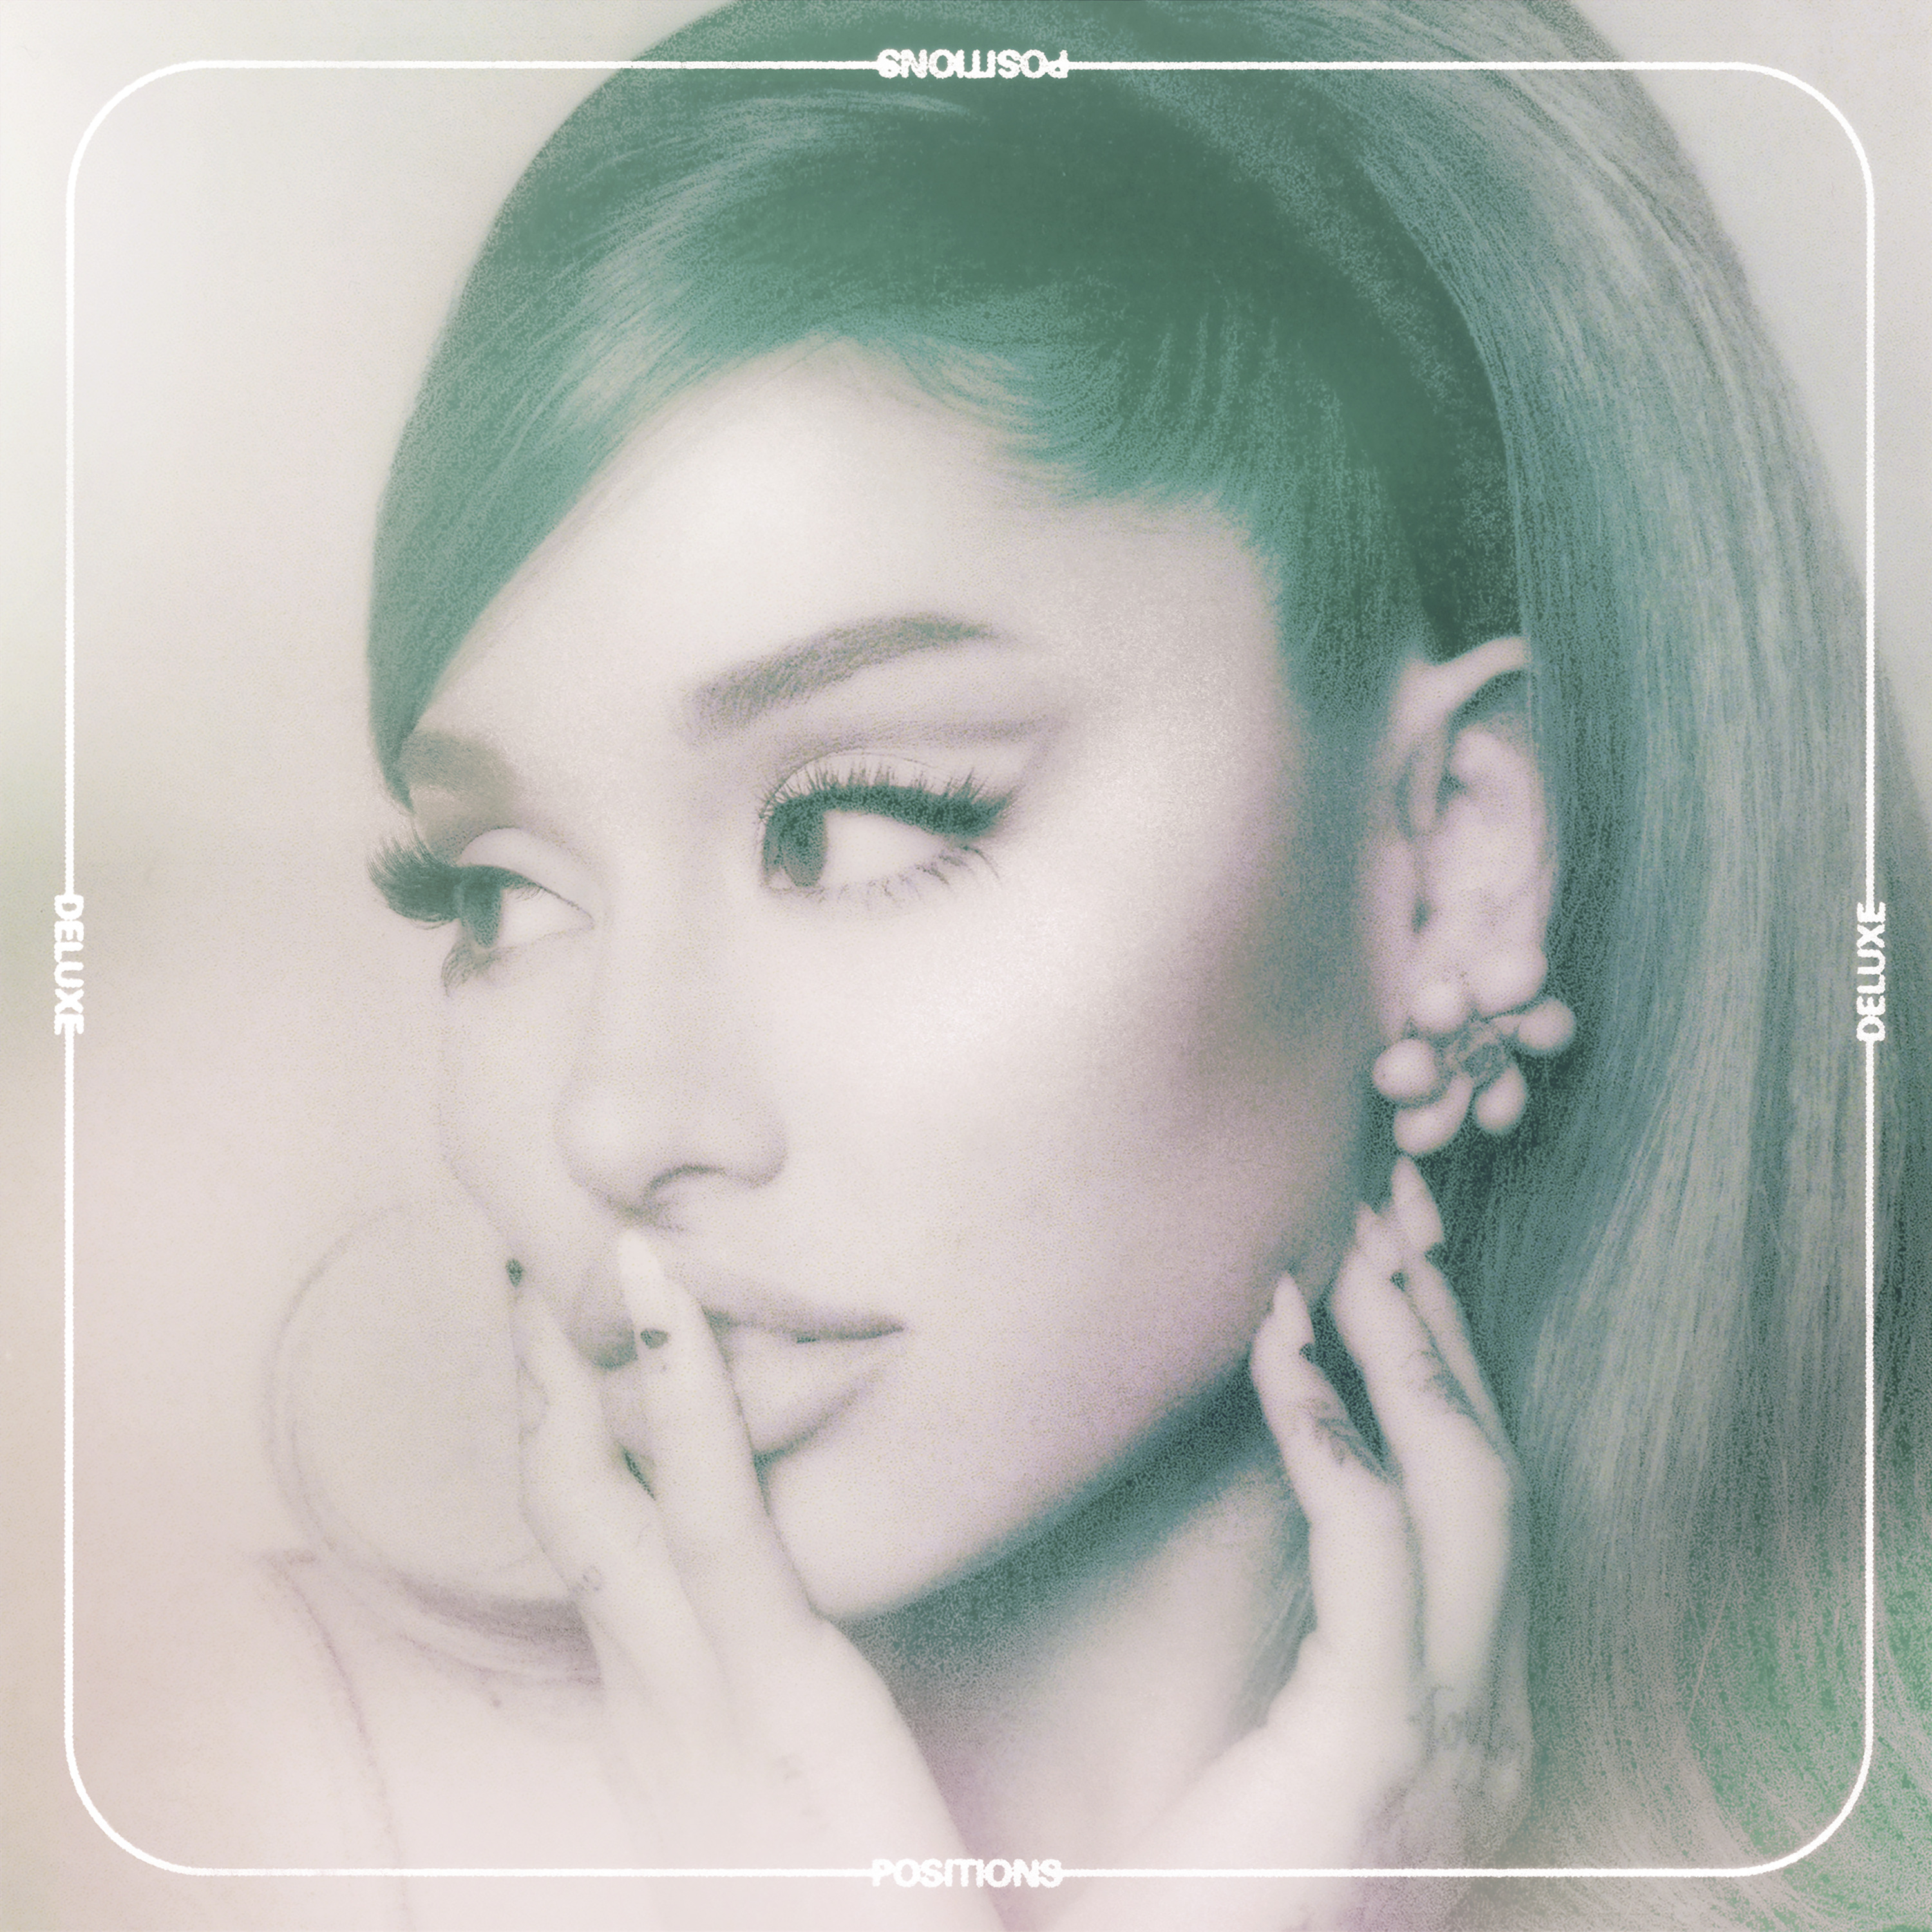 Ariana Grande — worst behavior cover artwork